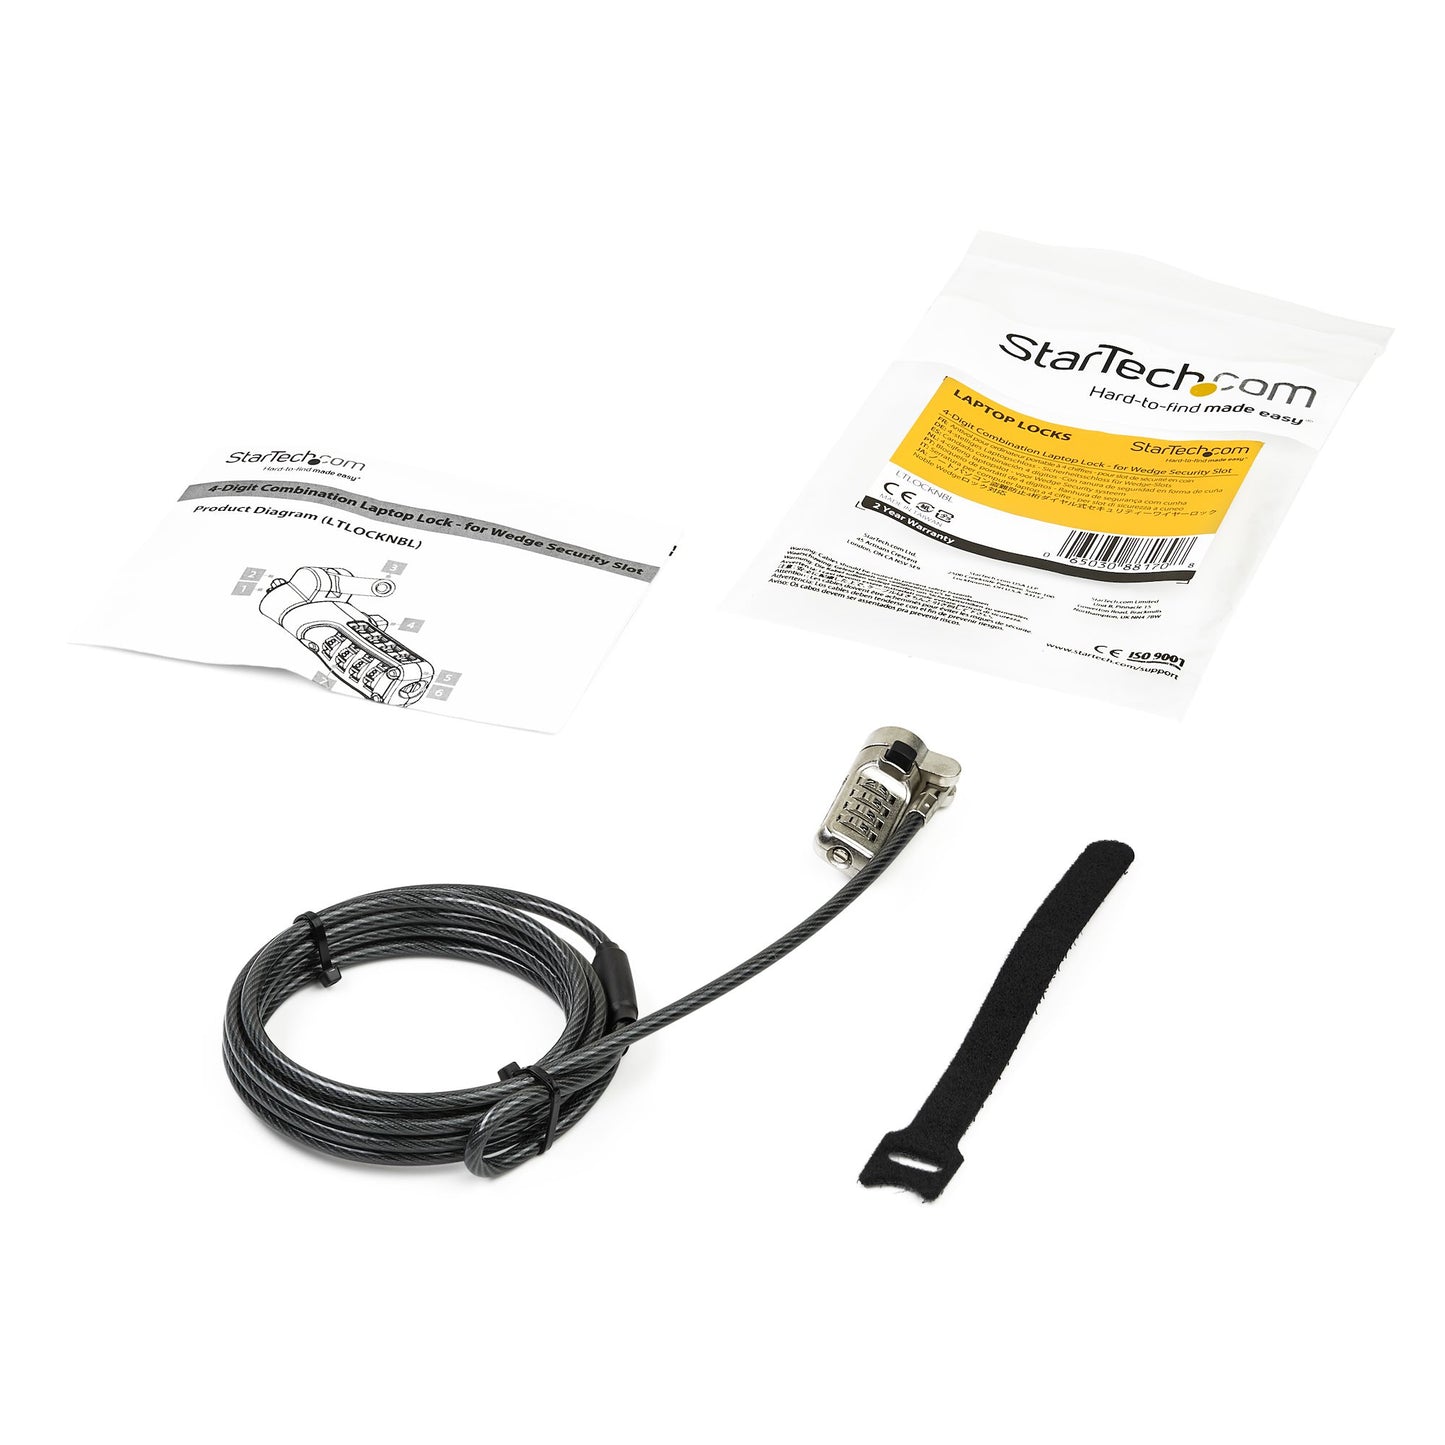 StarTech.com Cable con Candado de Combinación con 4 Dígitos, 2.04 Metros, Negro/Plata